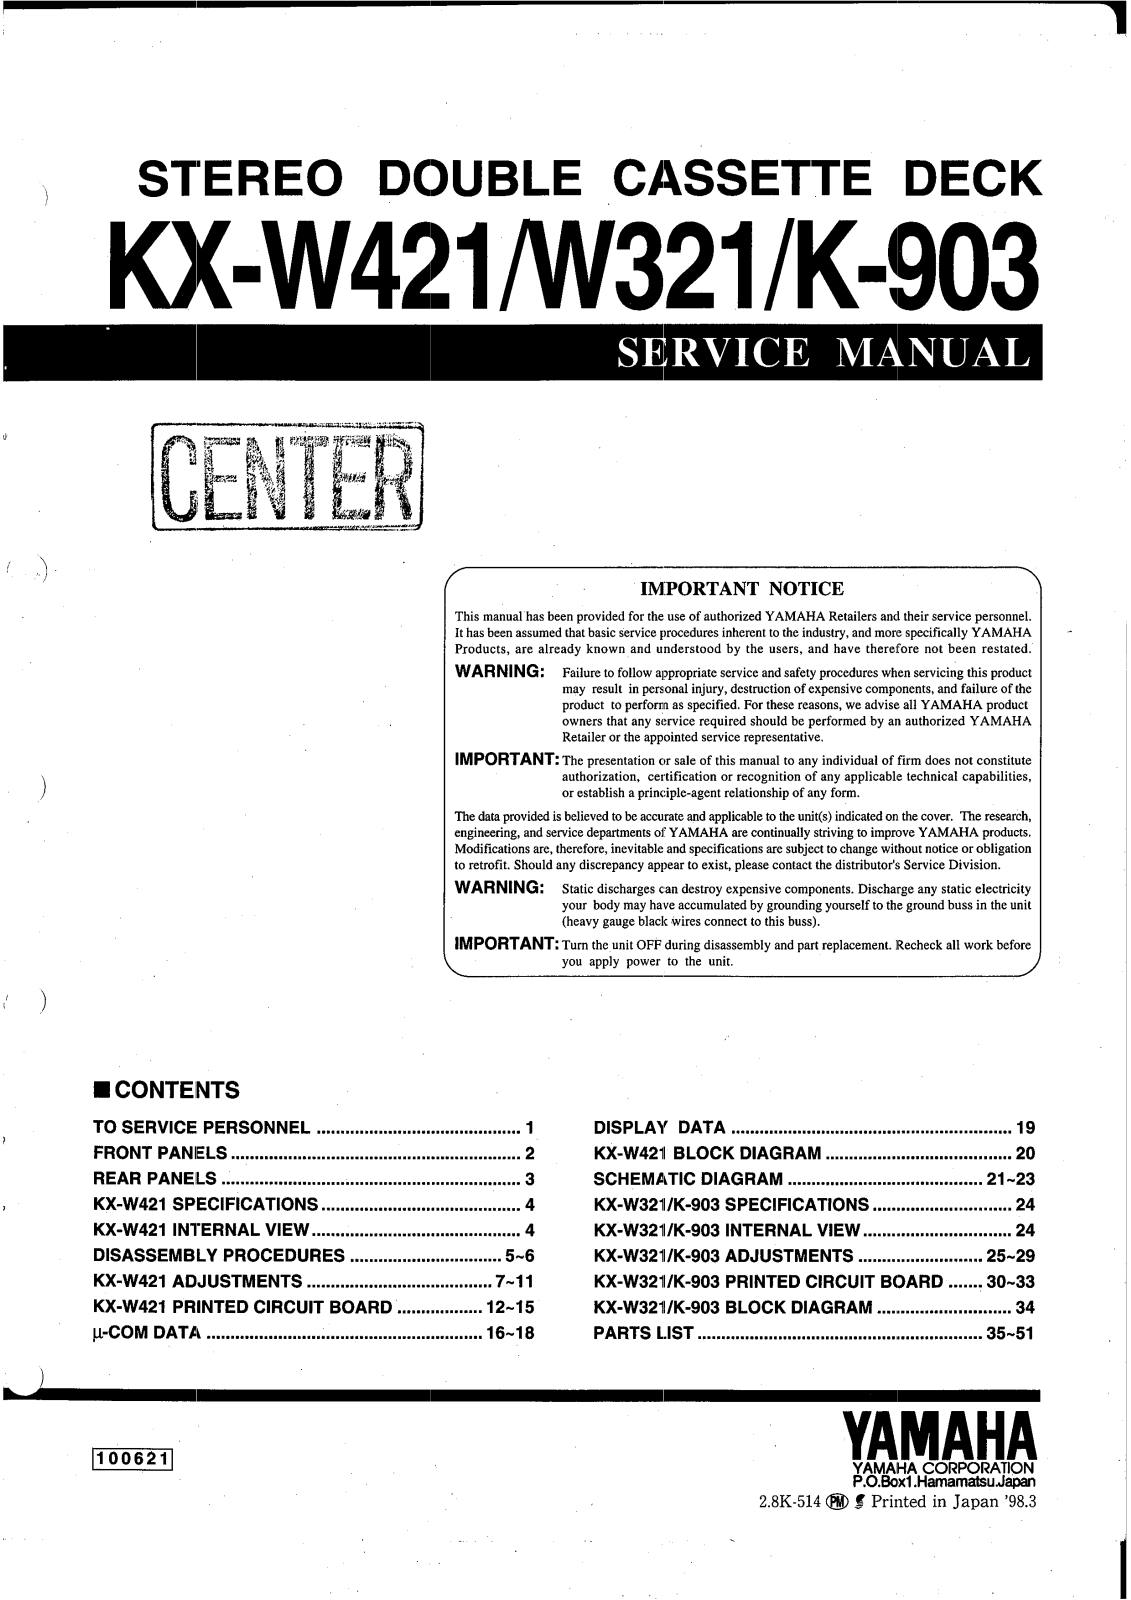 Yamaha W-321, K-903 Service Manual